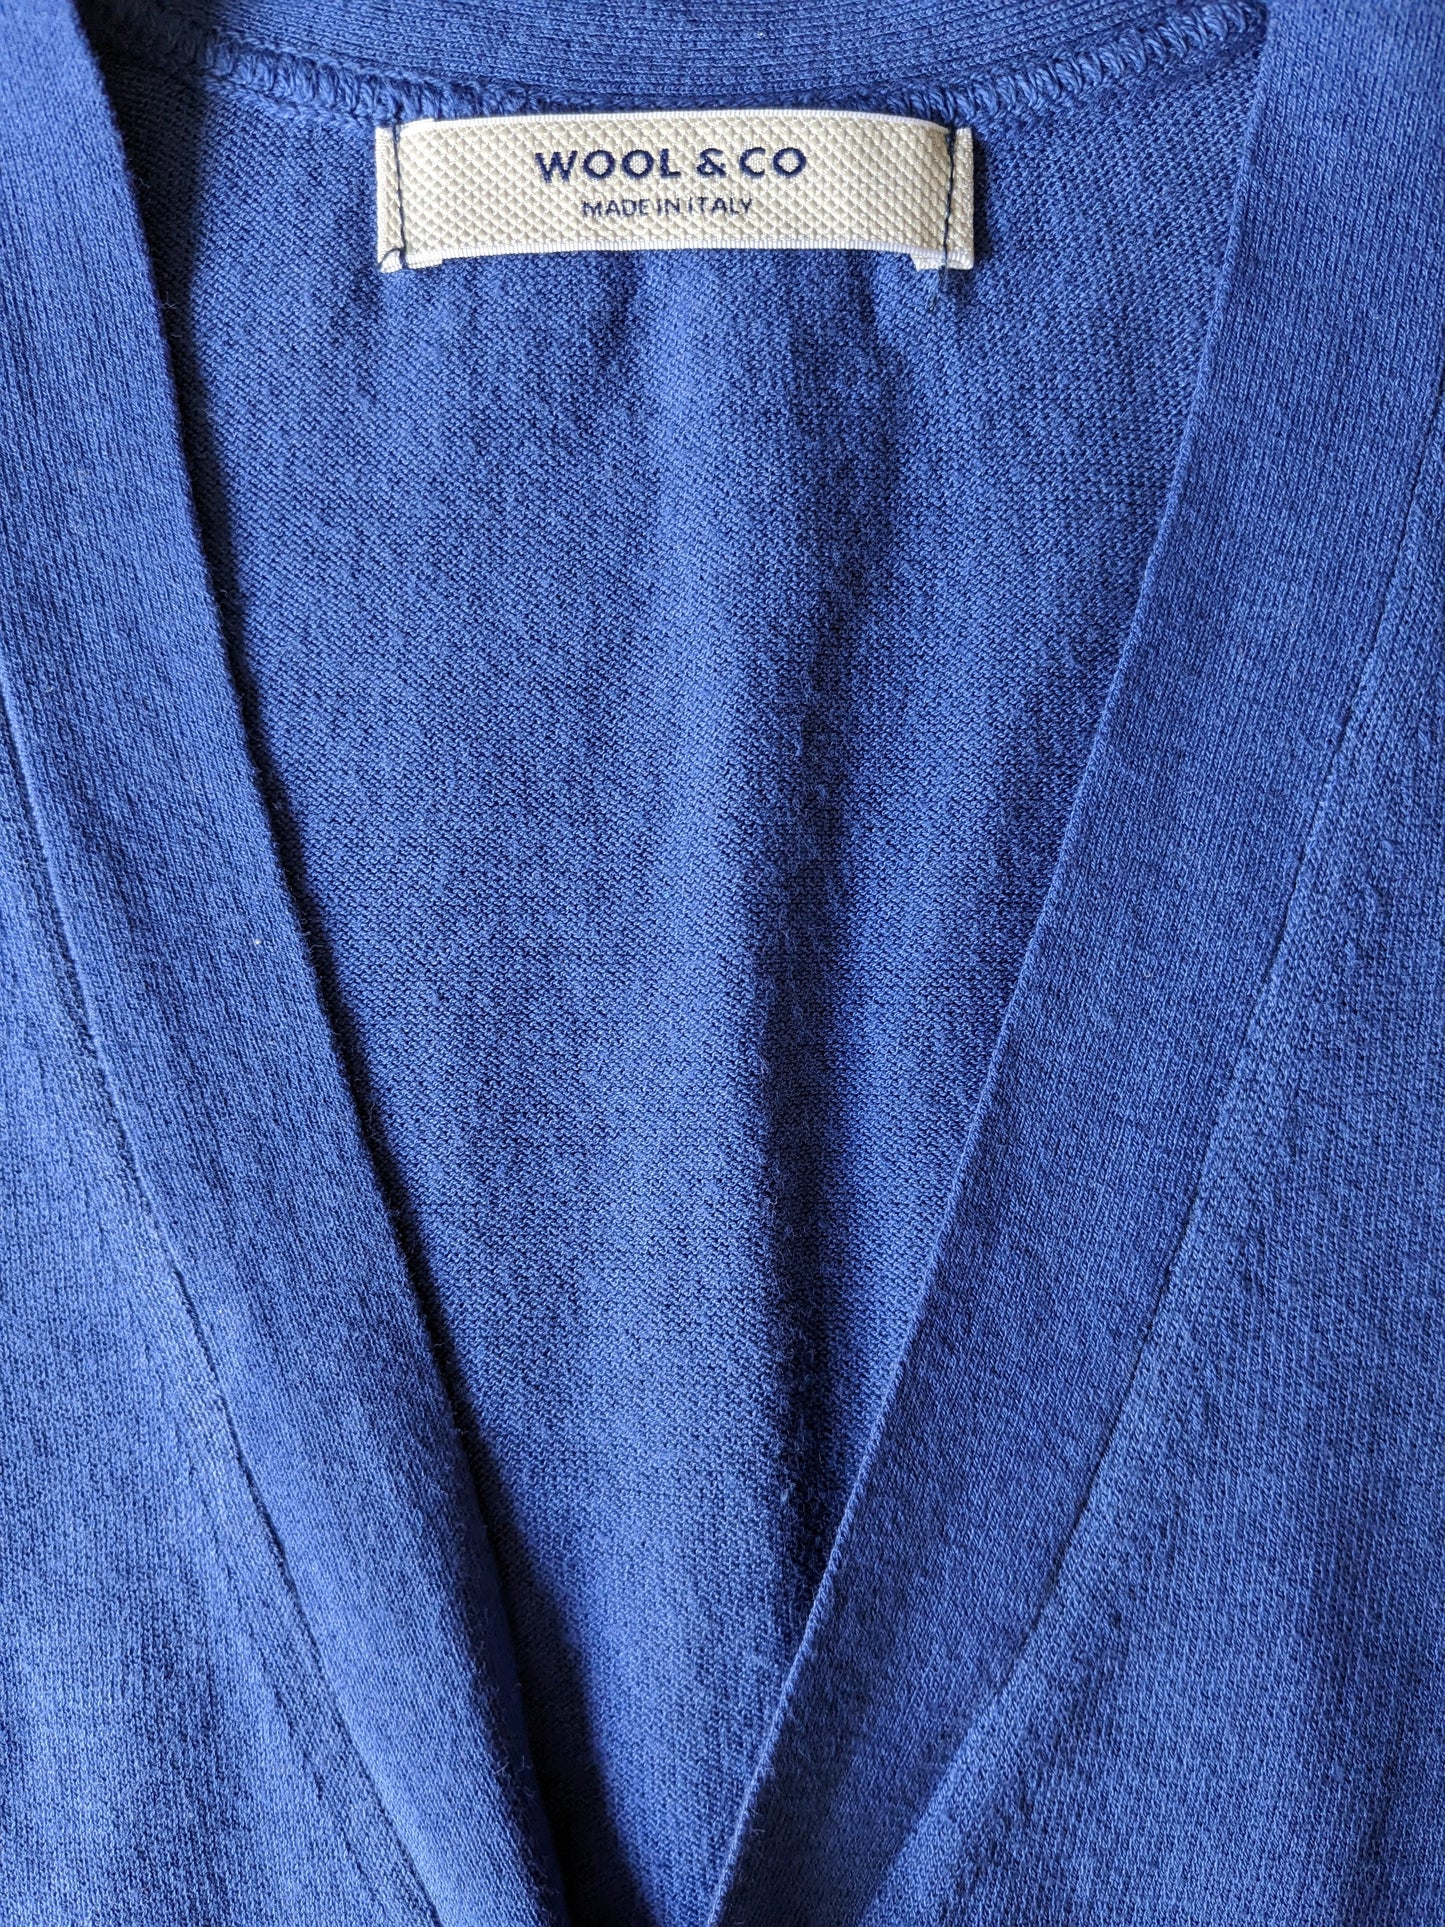 Gilet de coton en laine et en co. Couleur bleue. Taille S.